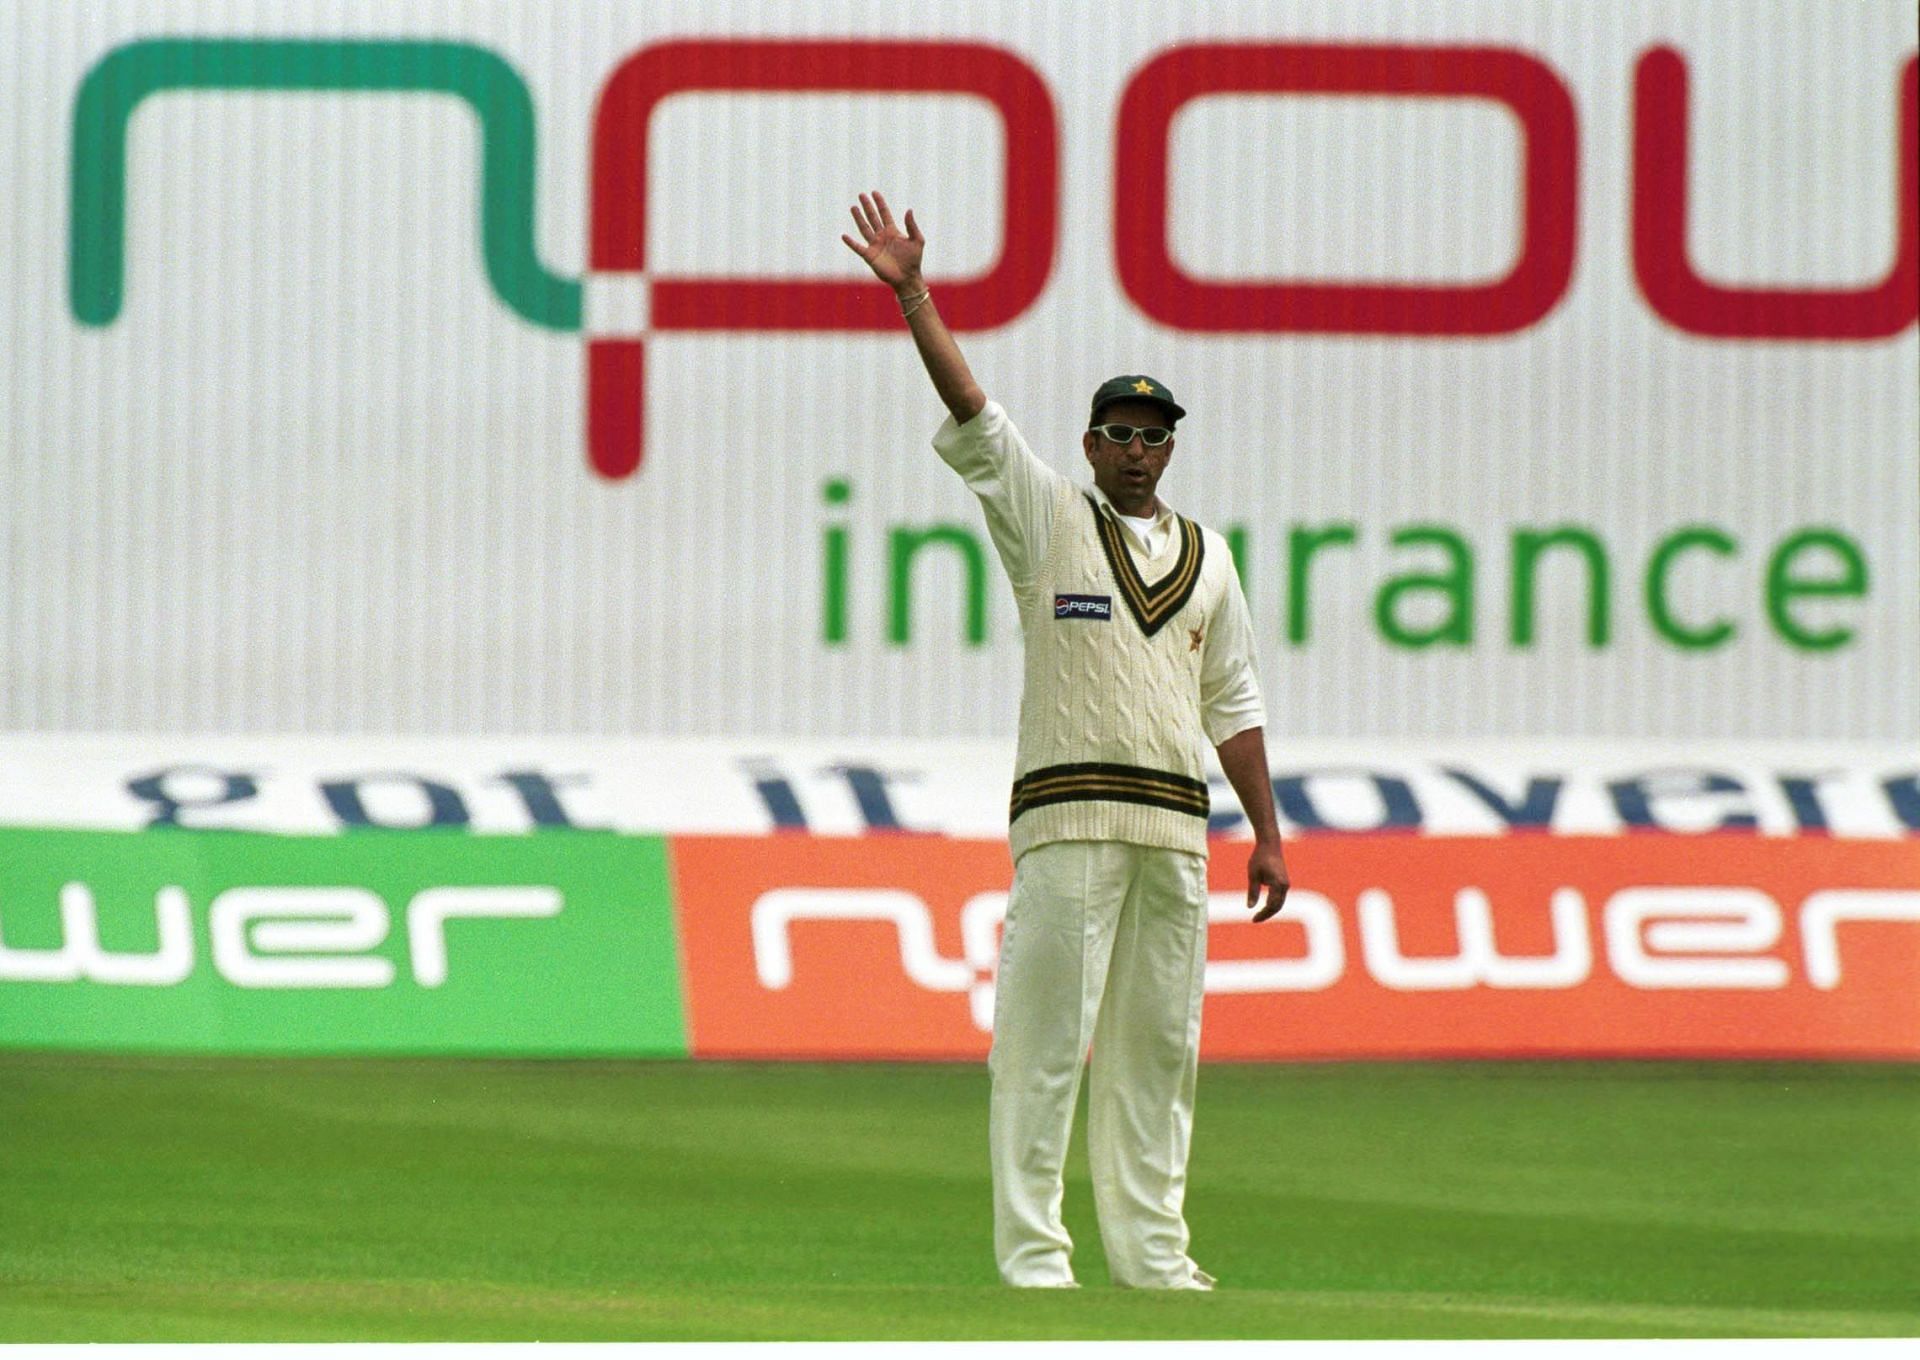 2002 में वसीम अकरम ने टेस्ट मैचों से संन्यास ले लिया था